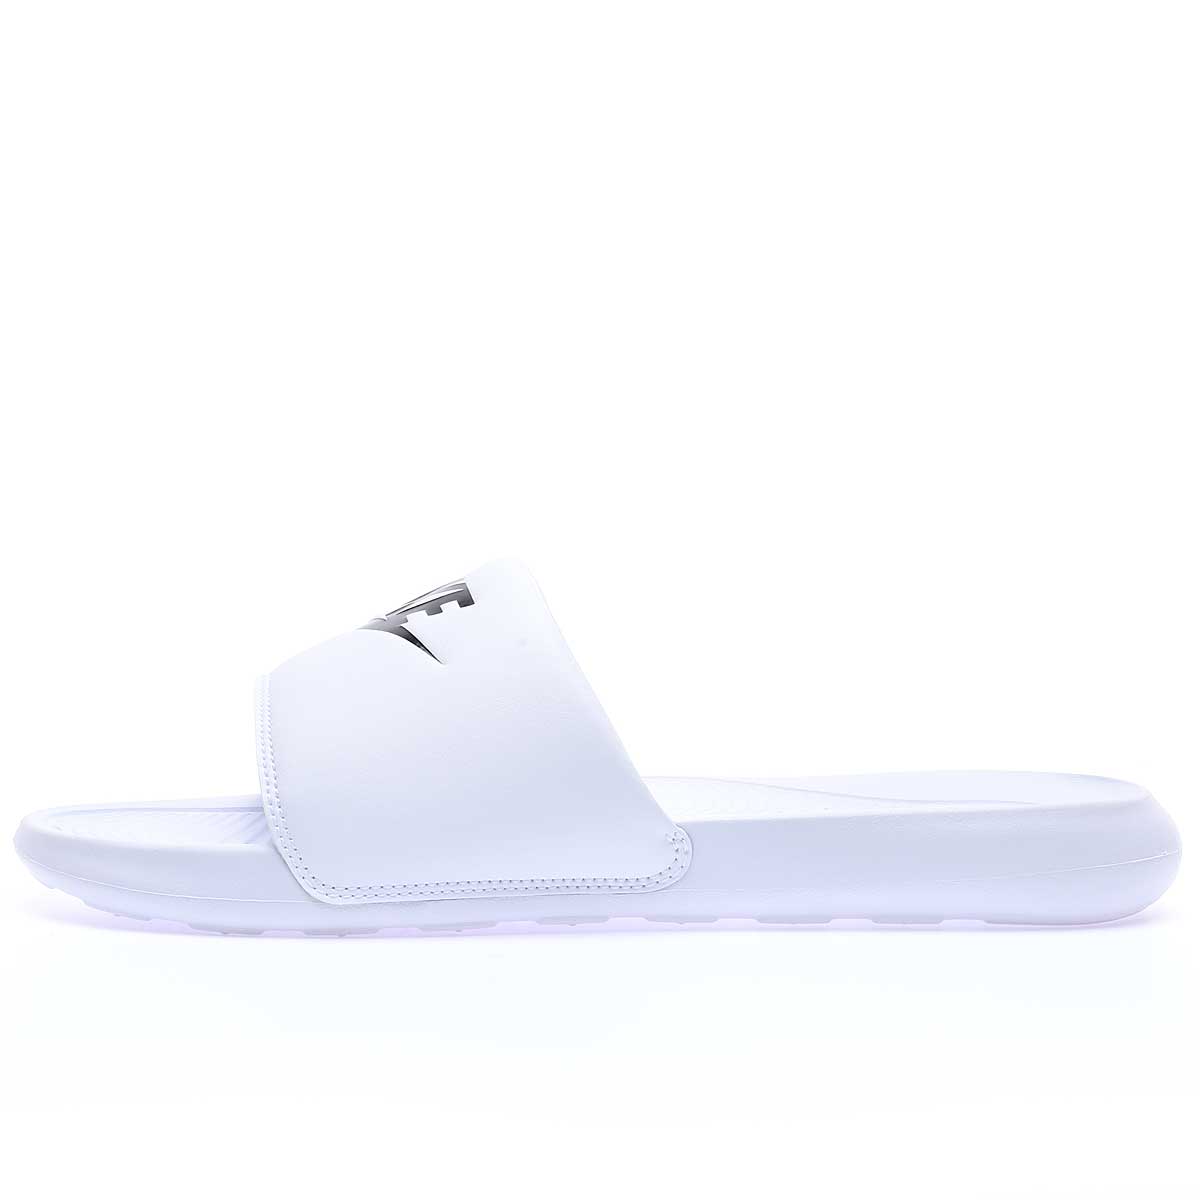 Nike Victori One Slide, Weiß/schwarz-weiß EU50 1/2